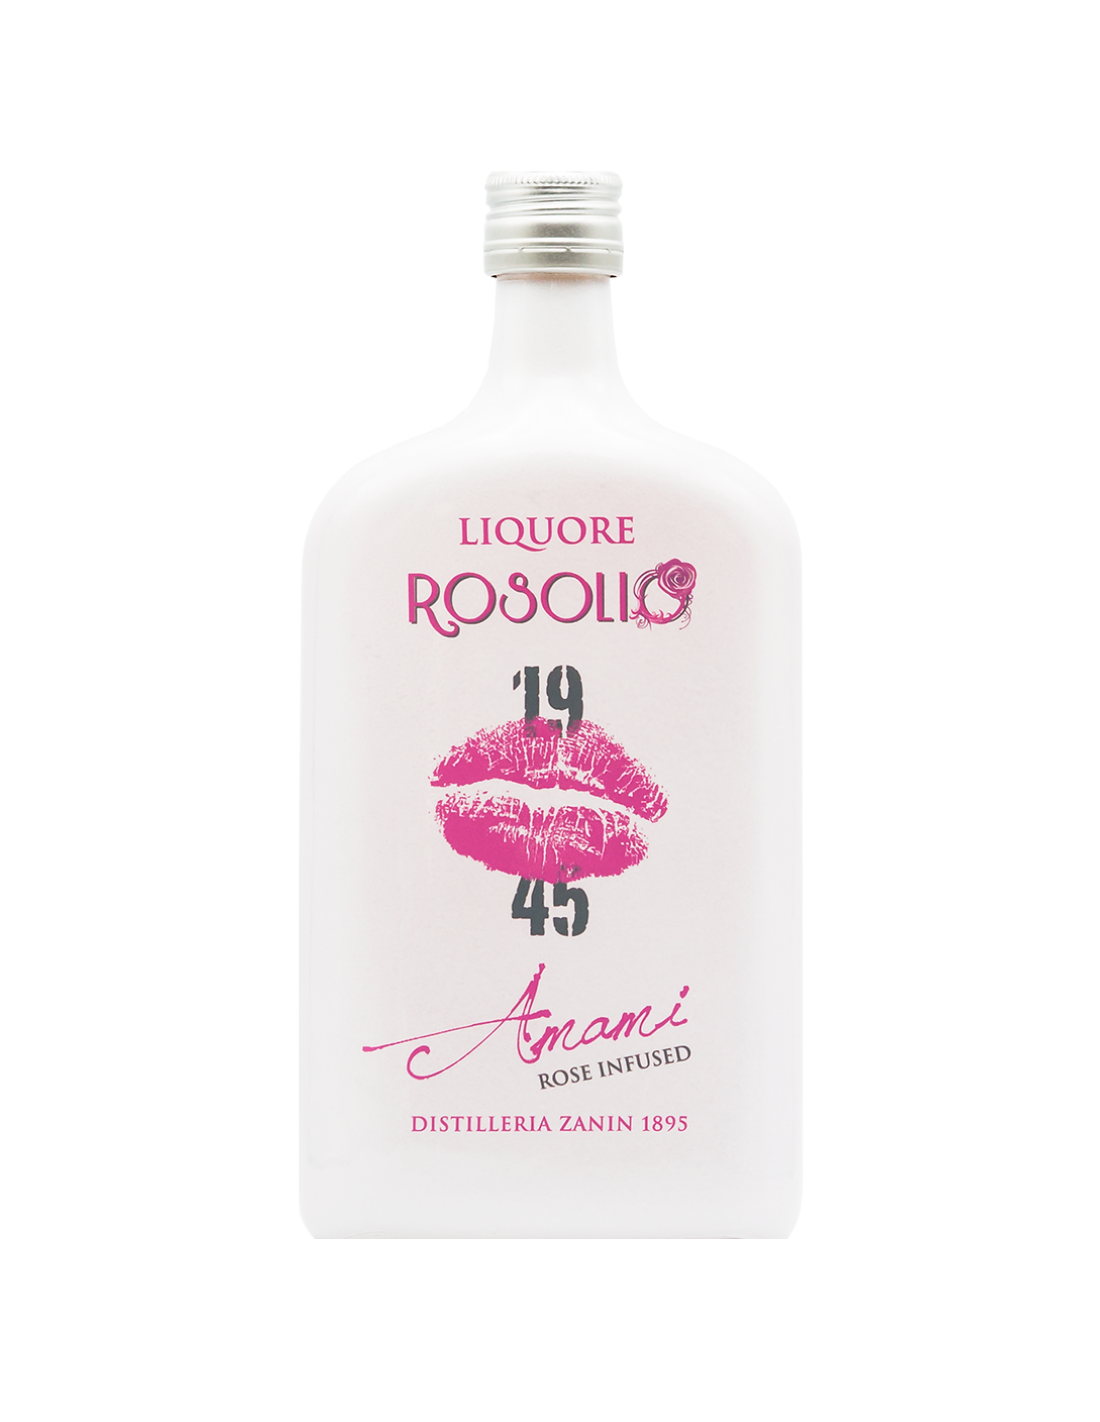 Lichior Zanin Rosolio 25% alc., 0.7L, Italia alcooldiscount.ro